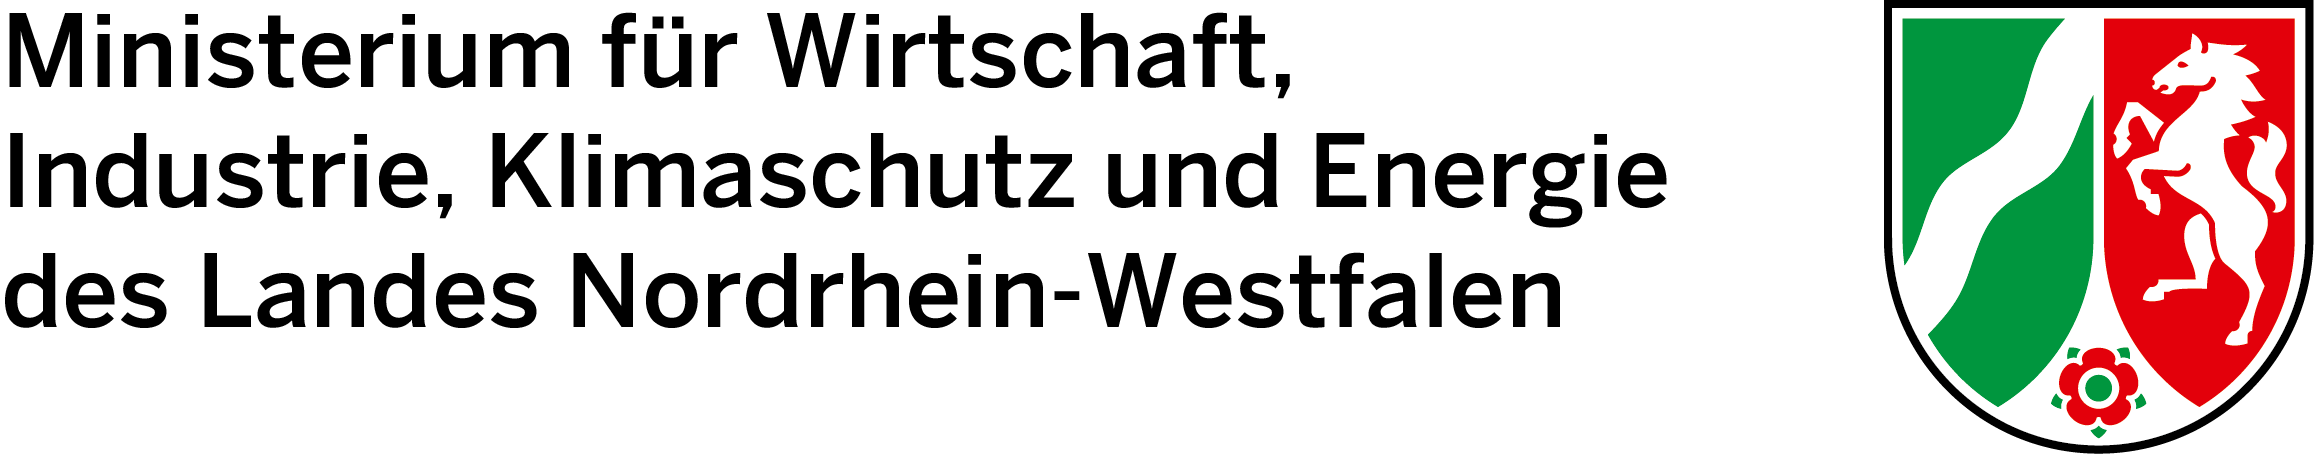 شعار وزارة الاقتصاد والصناعة وحماية المناخ والطاقة في ولاية شمال الراين - وستفاليا